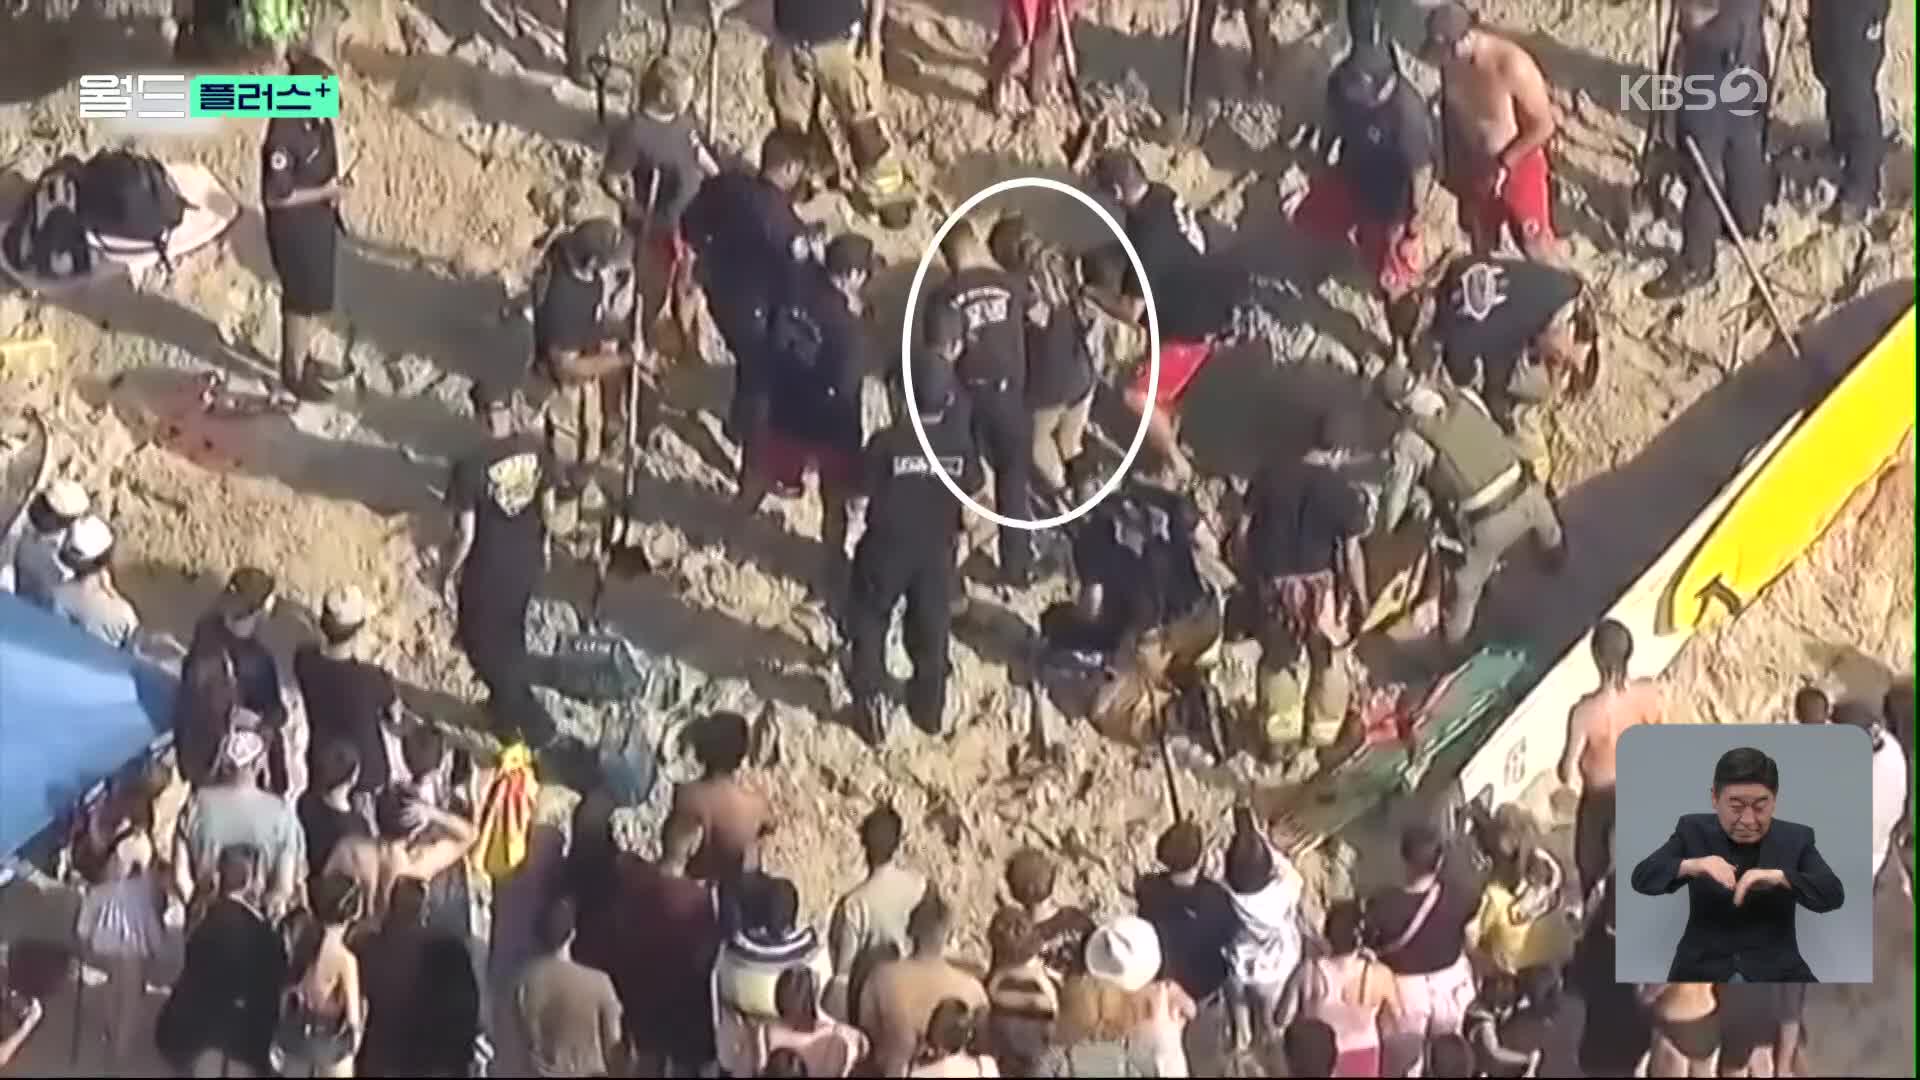 [월드 플러스] 모래구덩이에 빠진 여학생, 힘 모아 구해낸 사람들